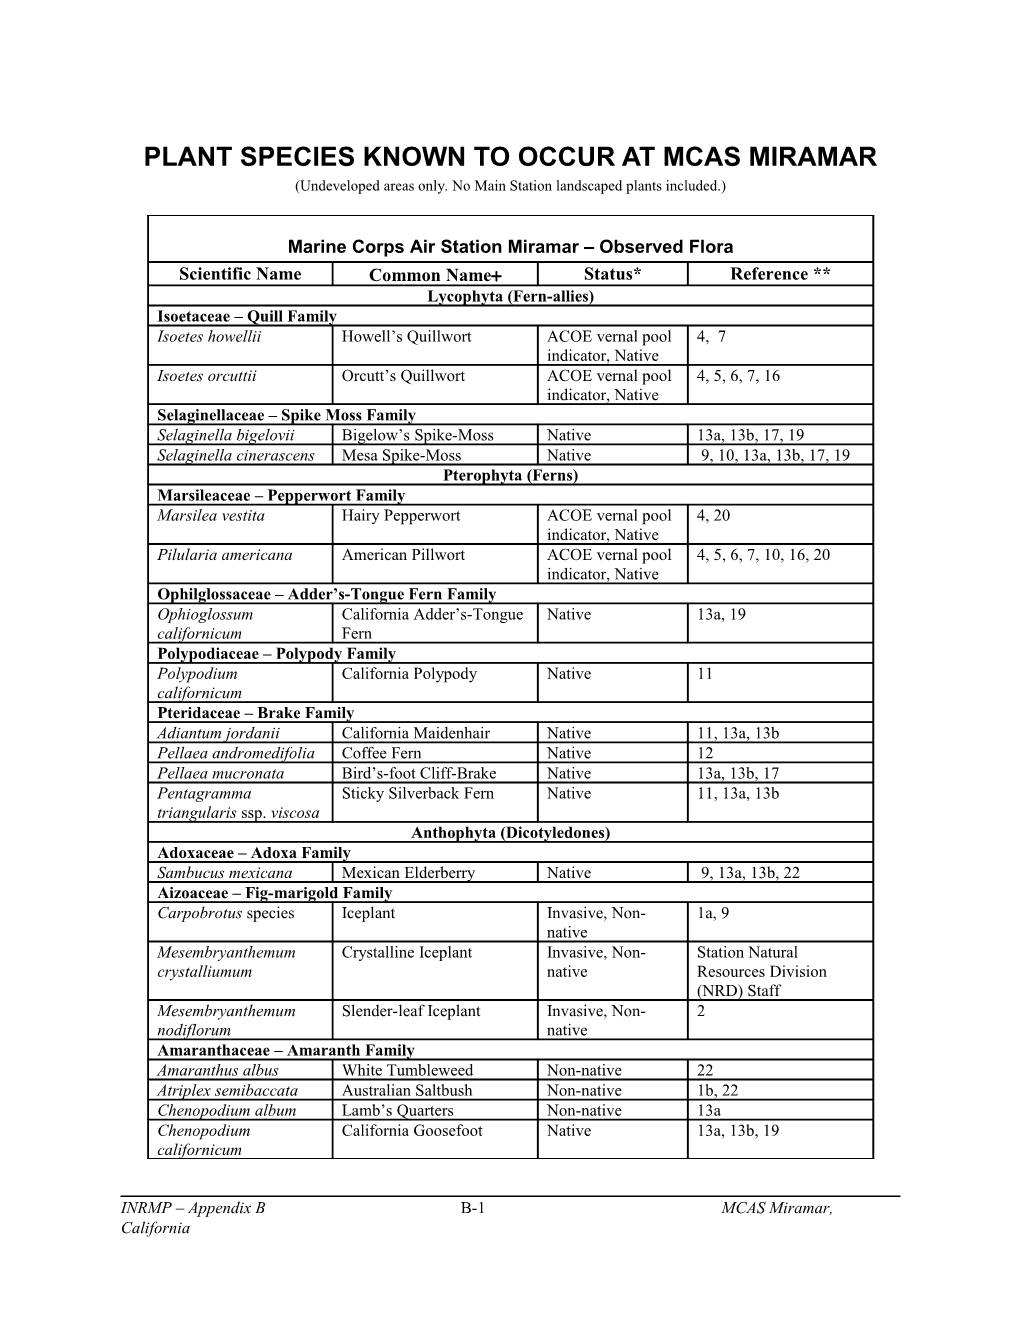 MCAS Miramar Plant Species List